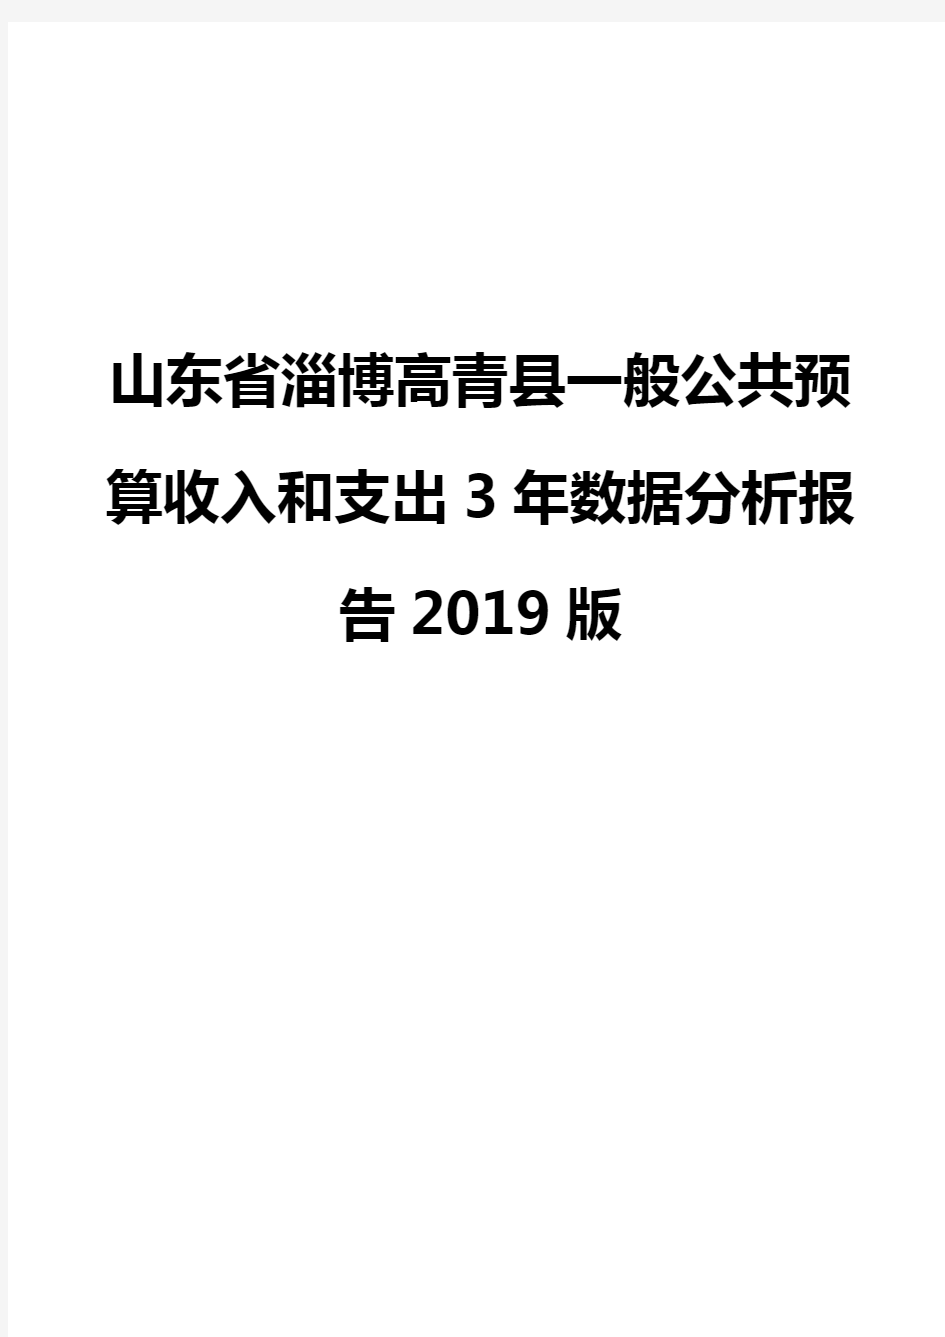 山东省淄博高青县一般公共预算收入和支出3年数据分析报告2019版